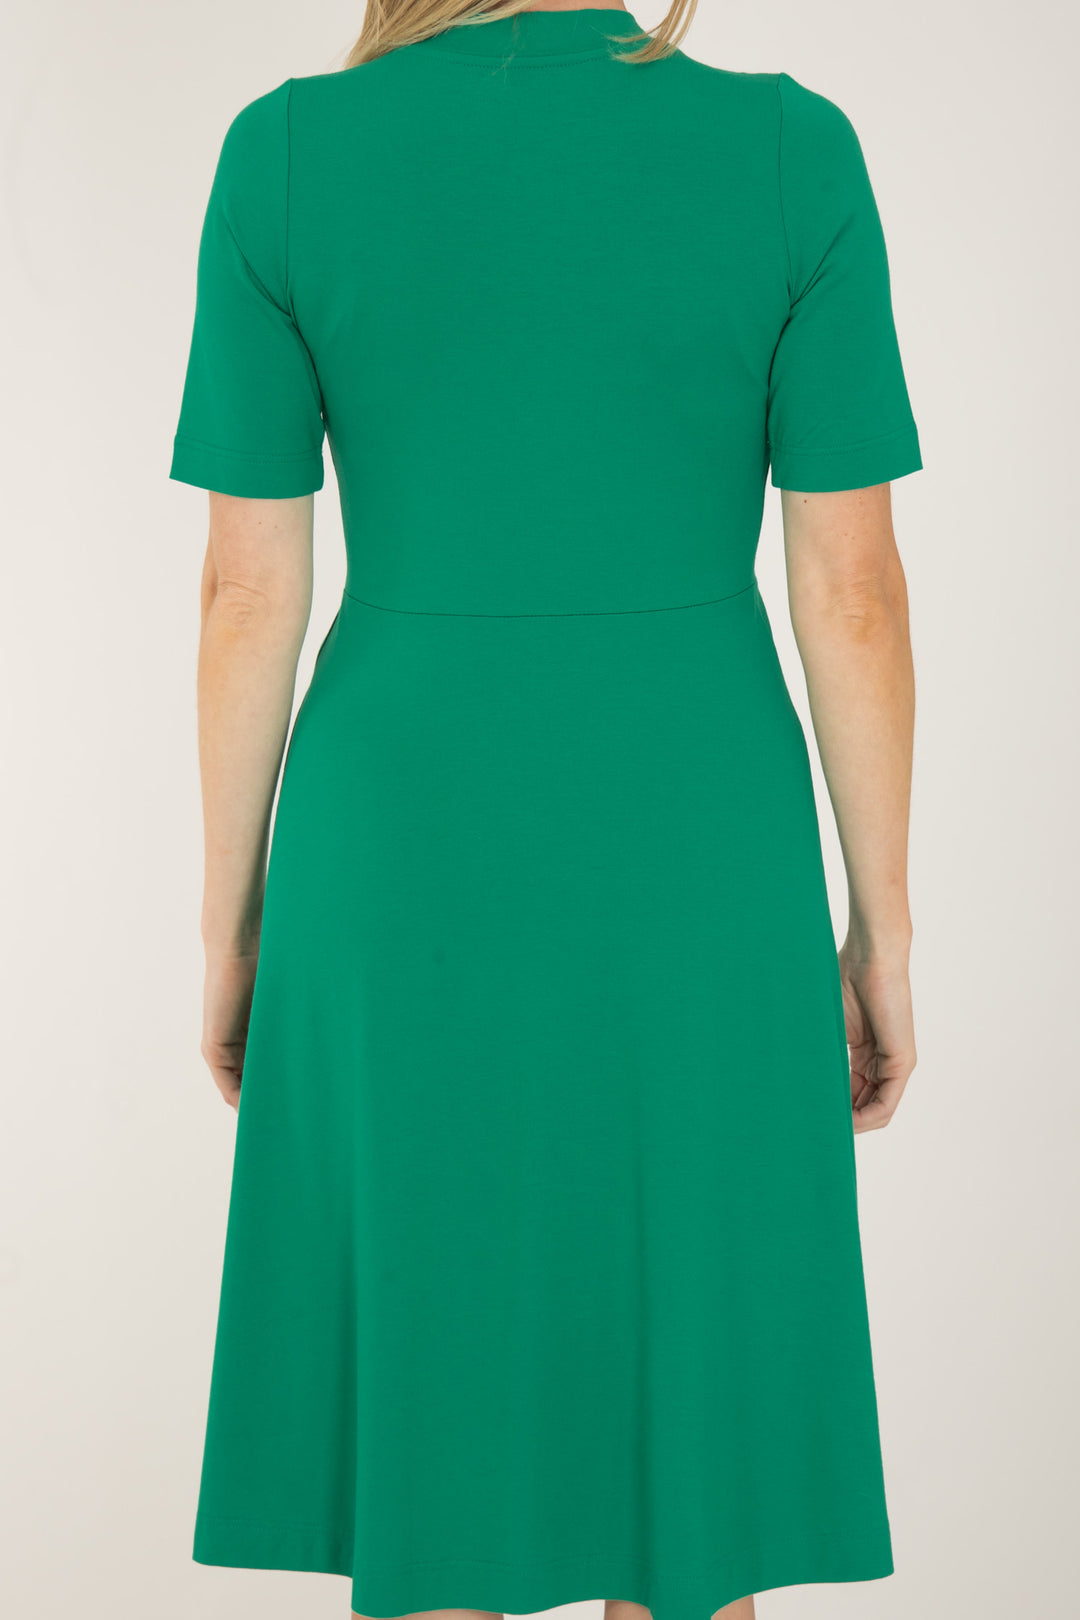 My most comfy short jersey dress - Emerald Green - Grön, knälång klänning i trikå